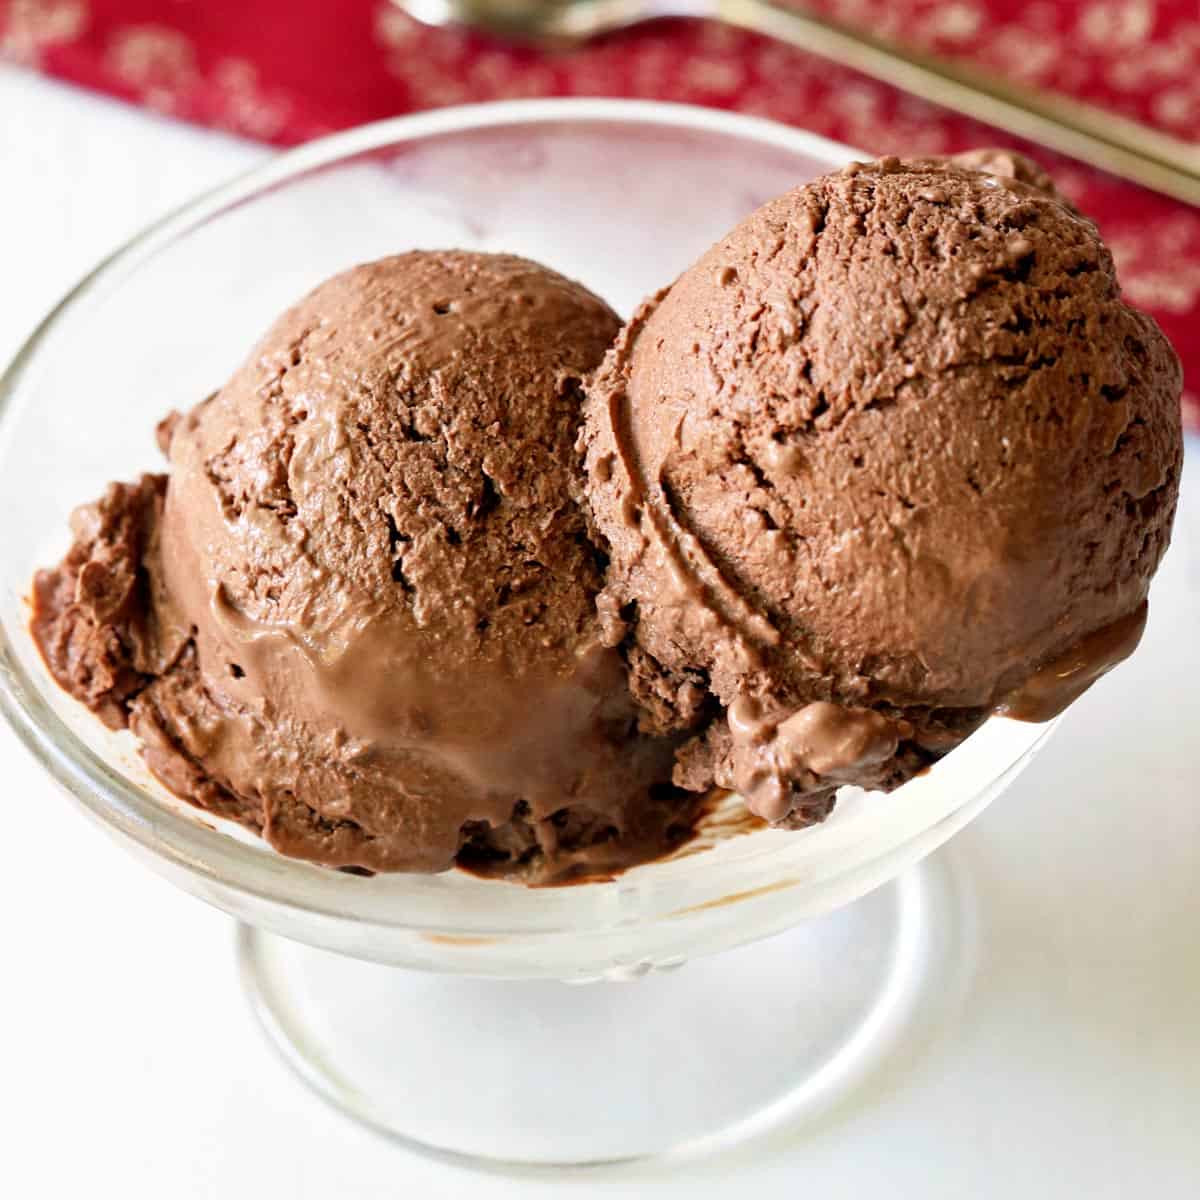 https://healthyrecipesblogs.com/wp-content/uploads/2020/08/chocolate-frozen-yogurt-featured-2022.jpg